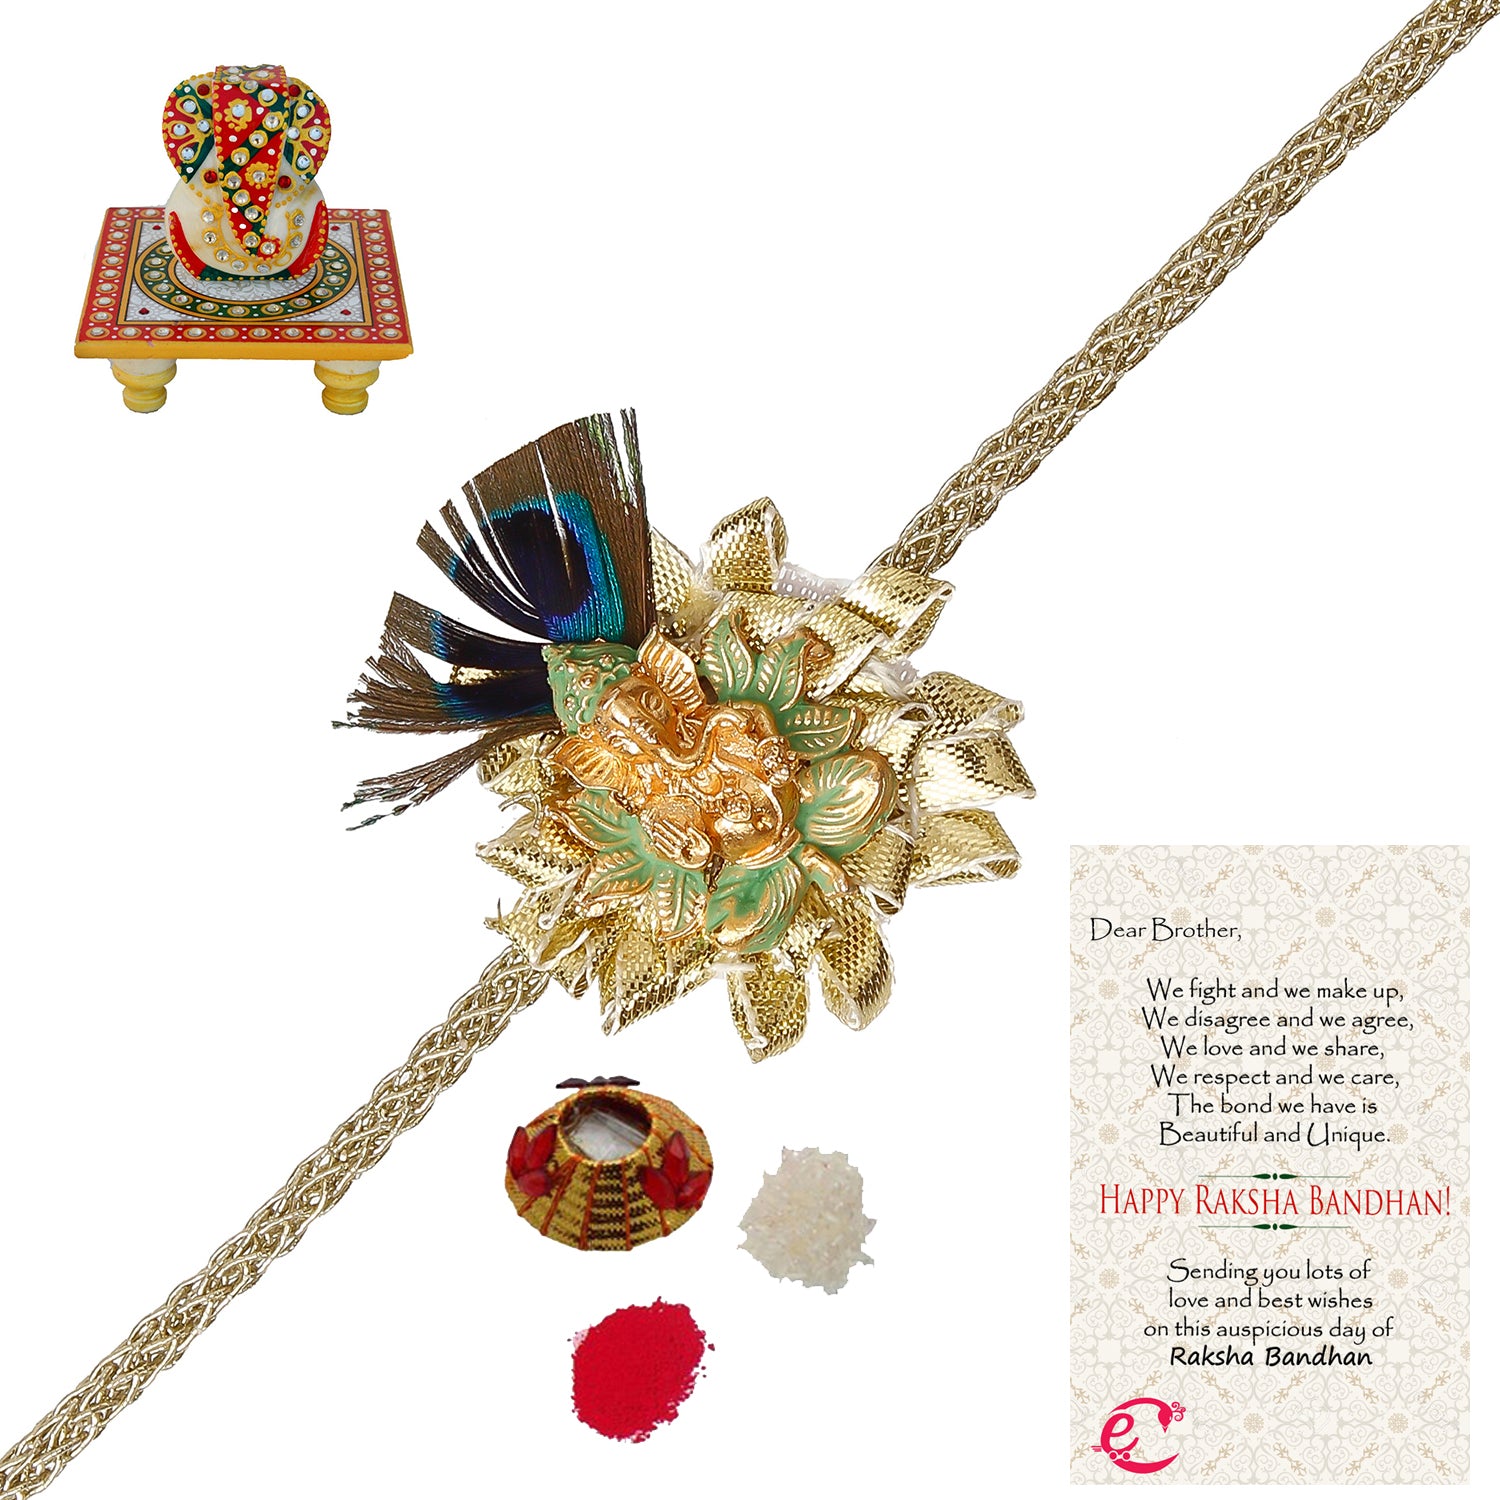 Designer Ganesha Mor Pankh Rakhi with Lord Ganesha on Kundan Studded Marble Chowki and Roli Tikka Matki, Best Wishes Greeting Card